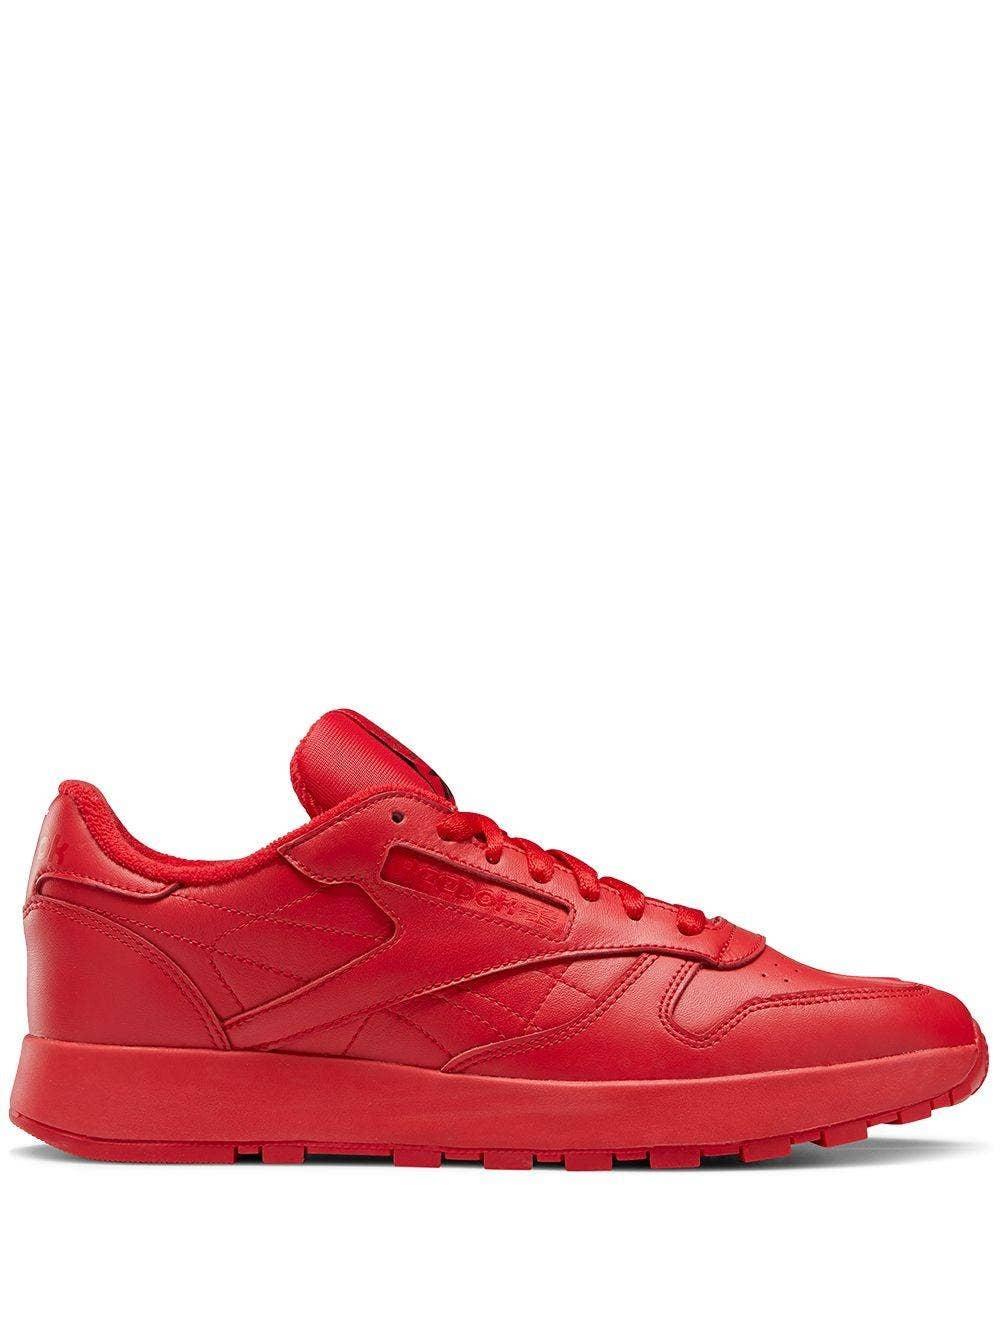 Reebok X Maison Margiela Red Leather Split Toe Sneakers | Lyst